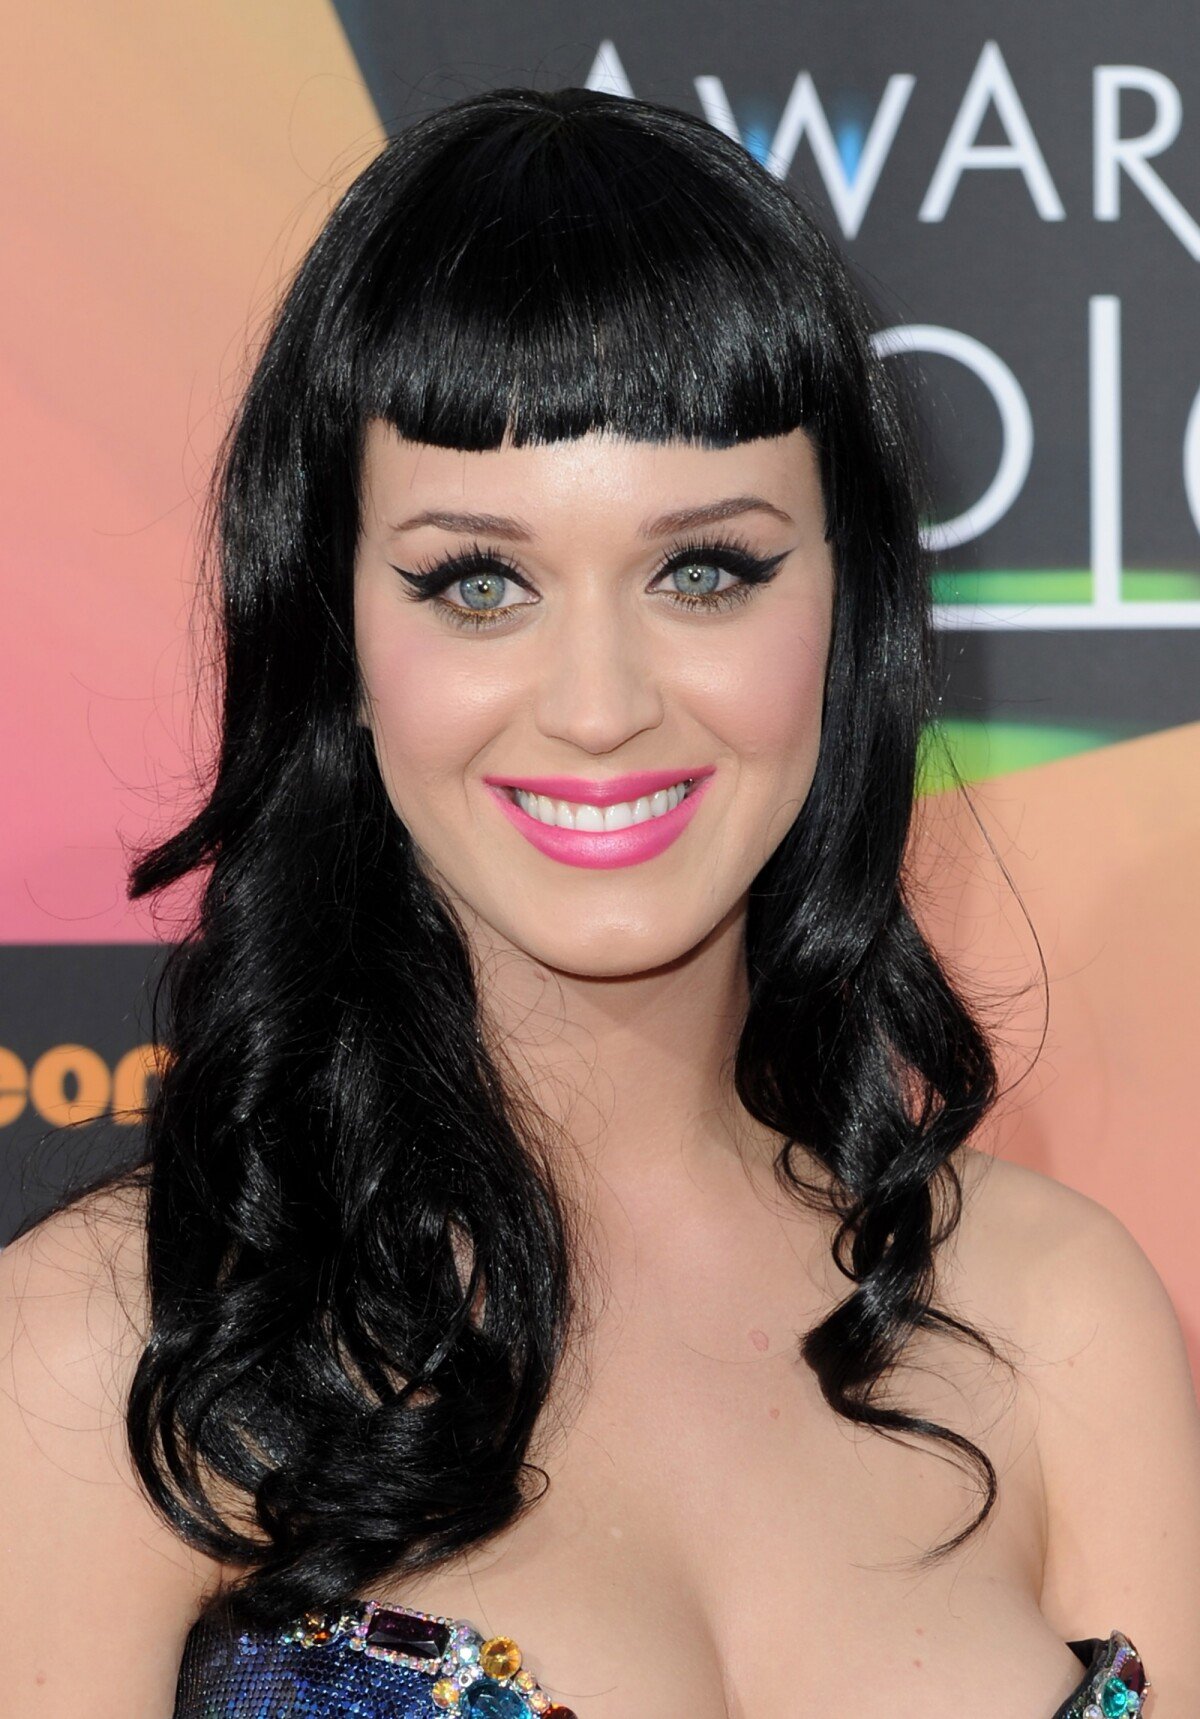 Foto: Katy Perry em março de 2014, usando o cabelo preto em um corte chanel,  acompanhado de uma franja - Purepeople